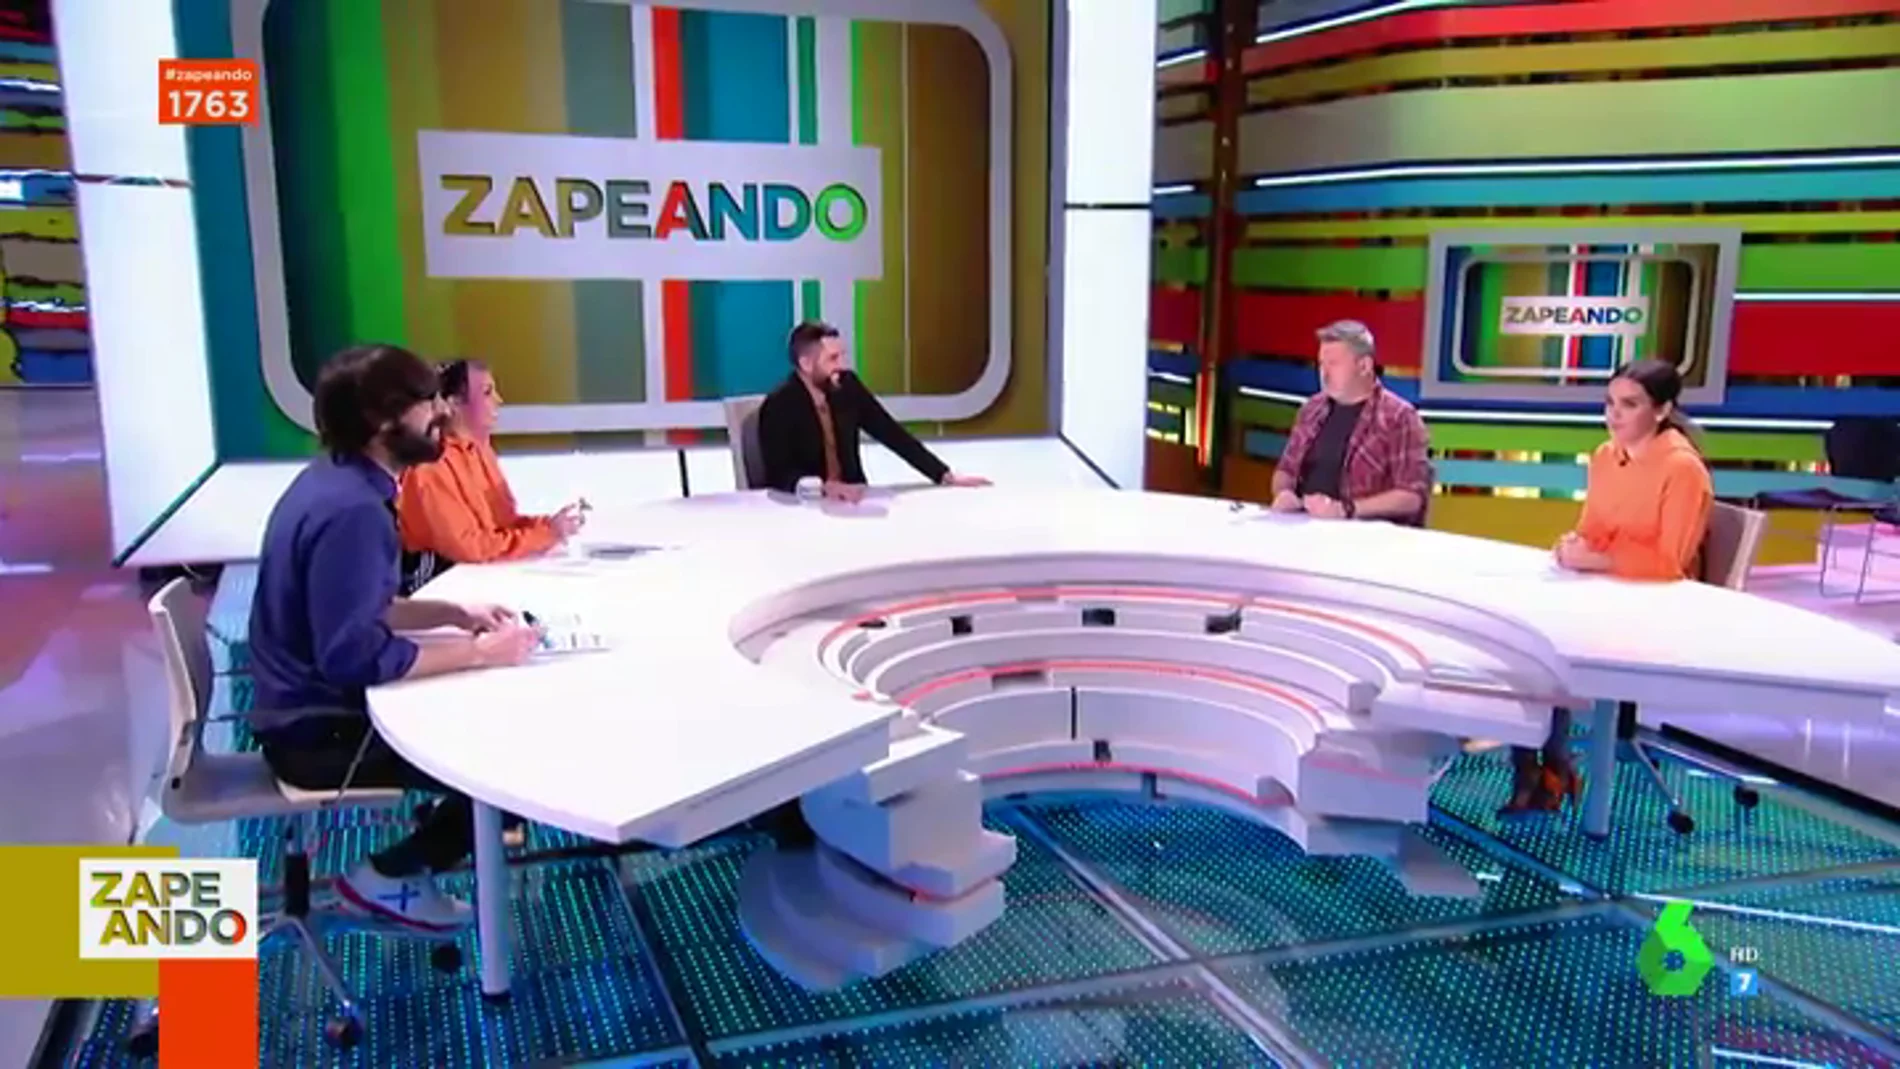 El chiste verde de Dani Mateo por el que sufre la riña del director de Zapeando: "Pido perdón, he pasado la línea"